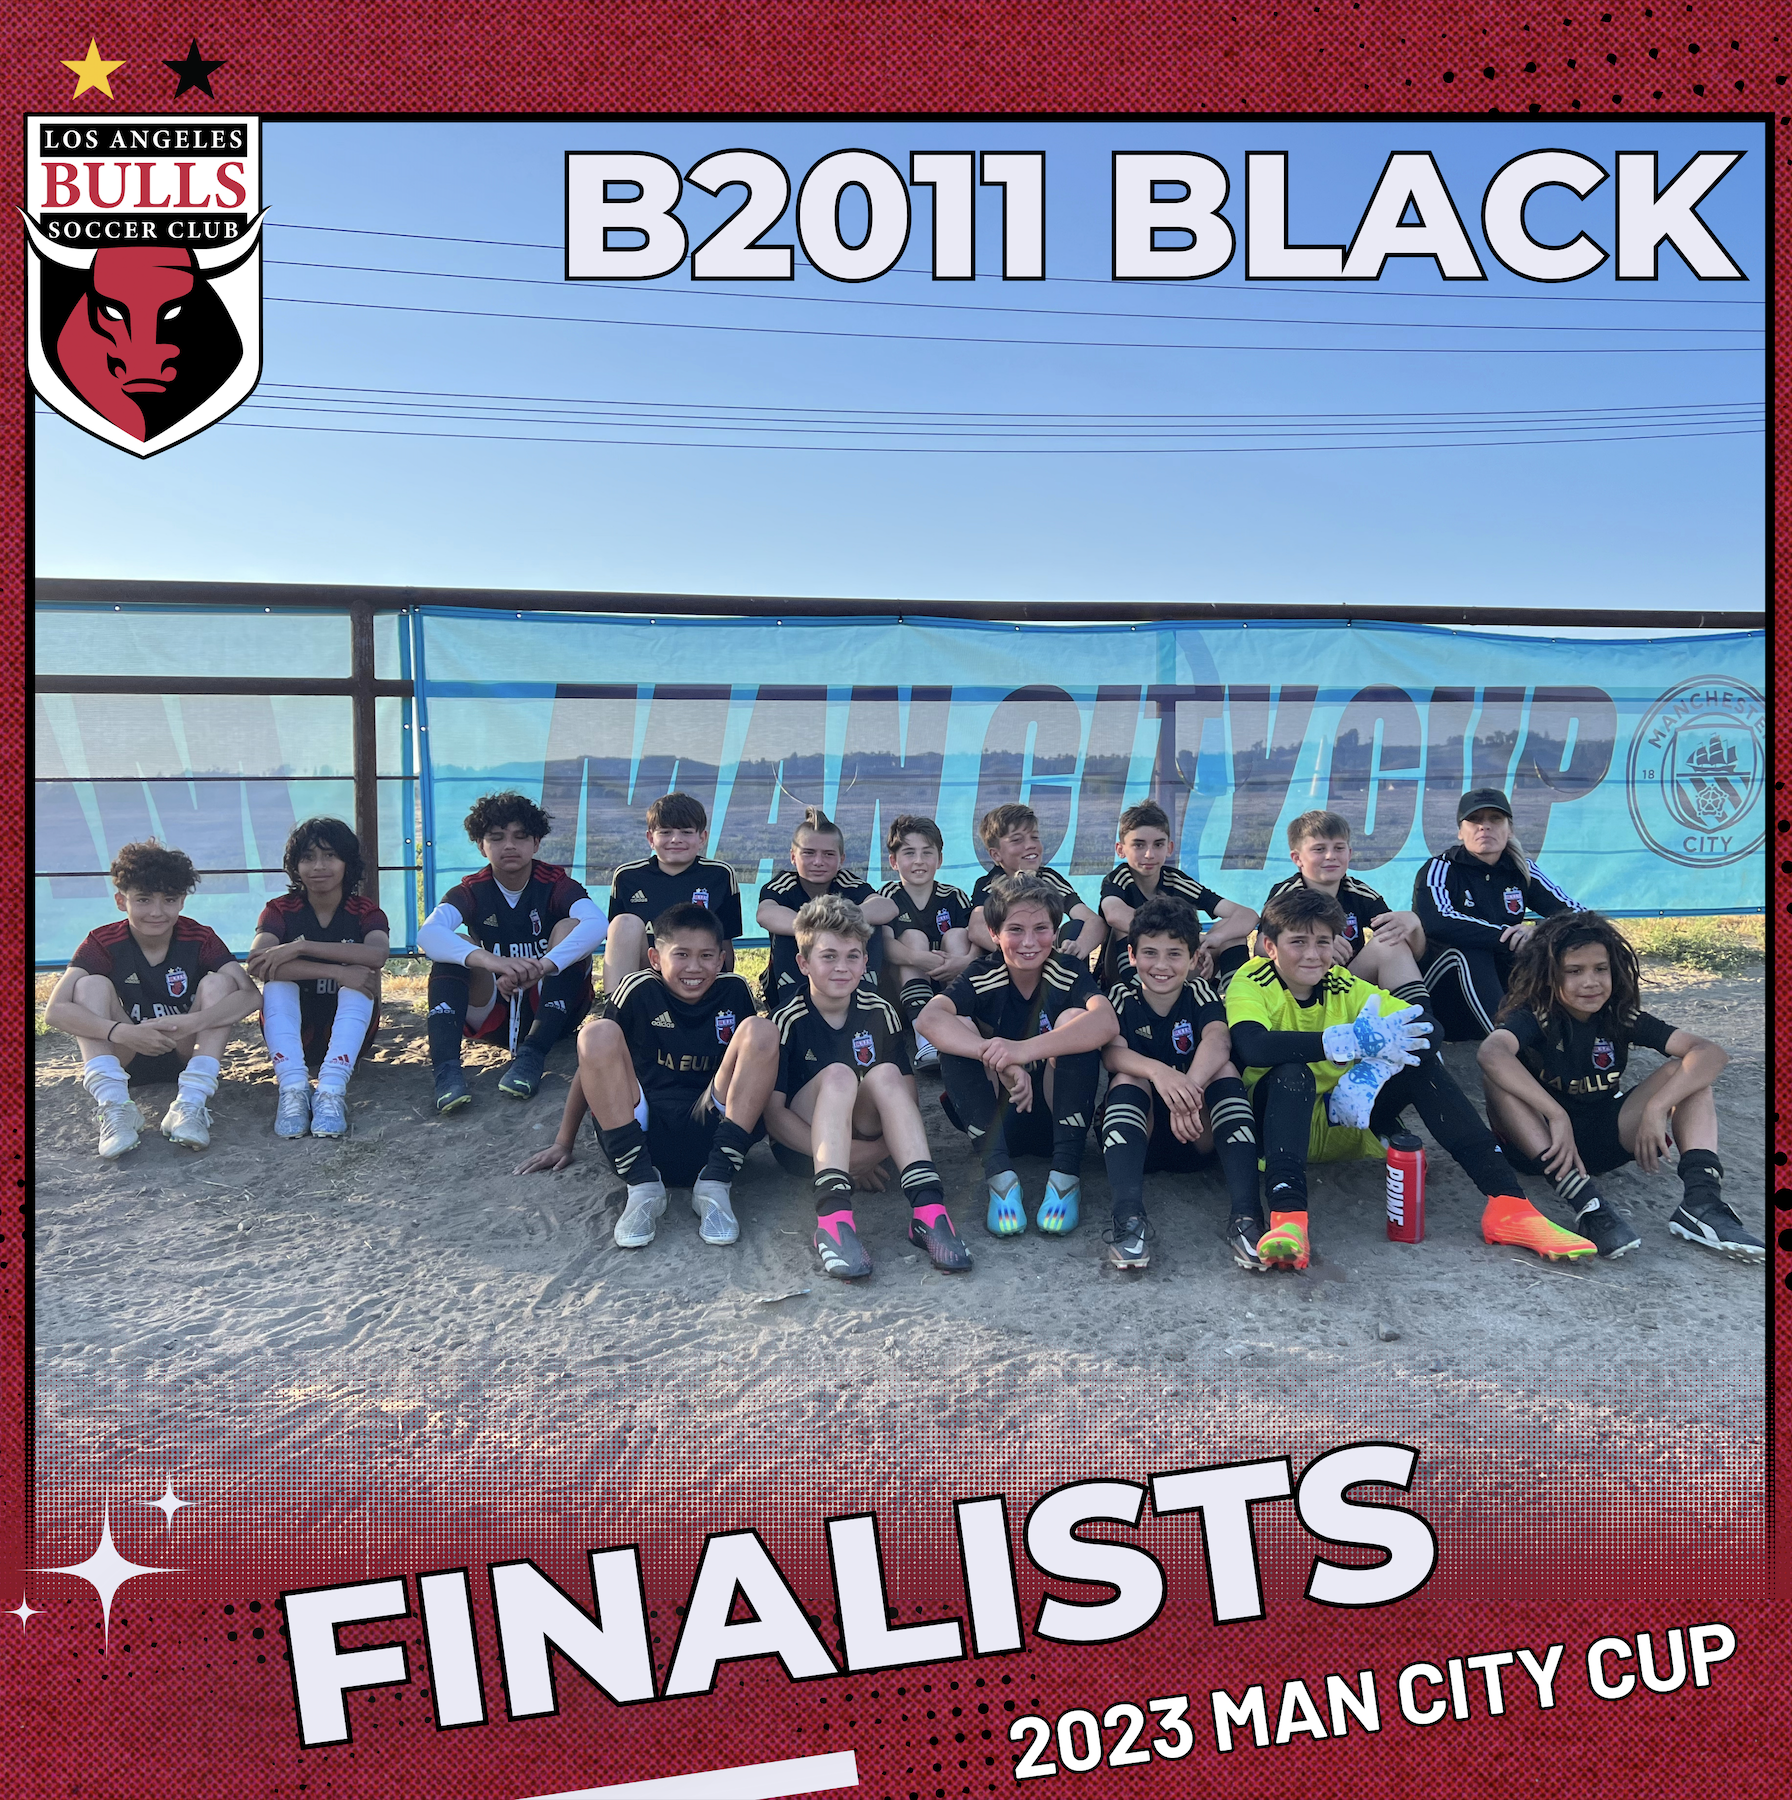 LA Bulls Man City Cup finalists B11 MLS Next team